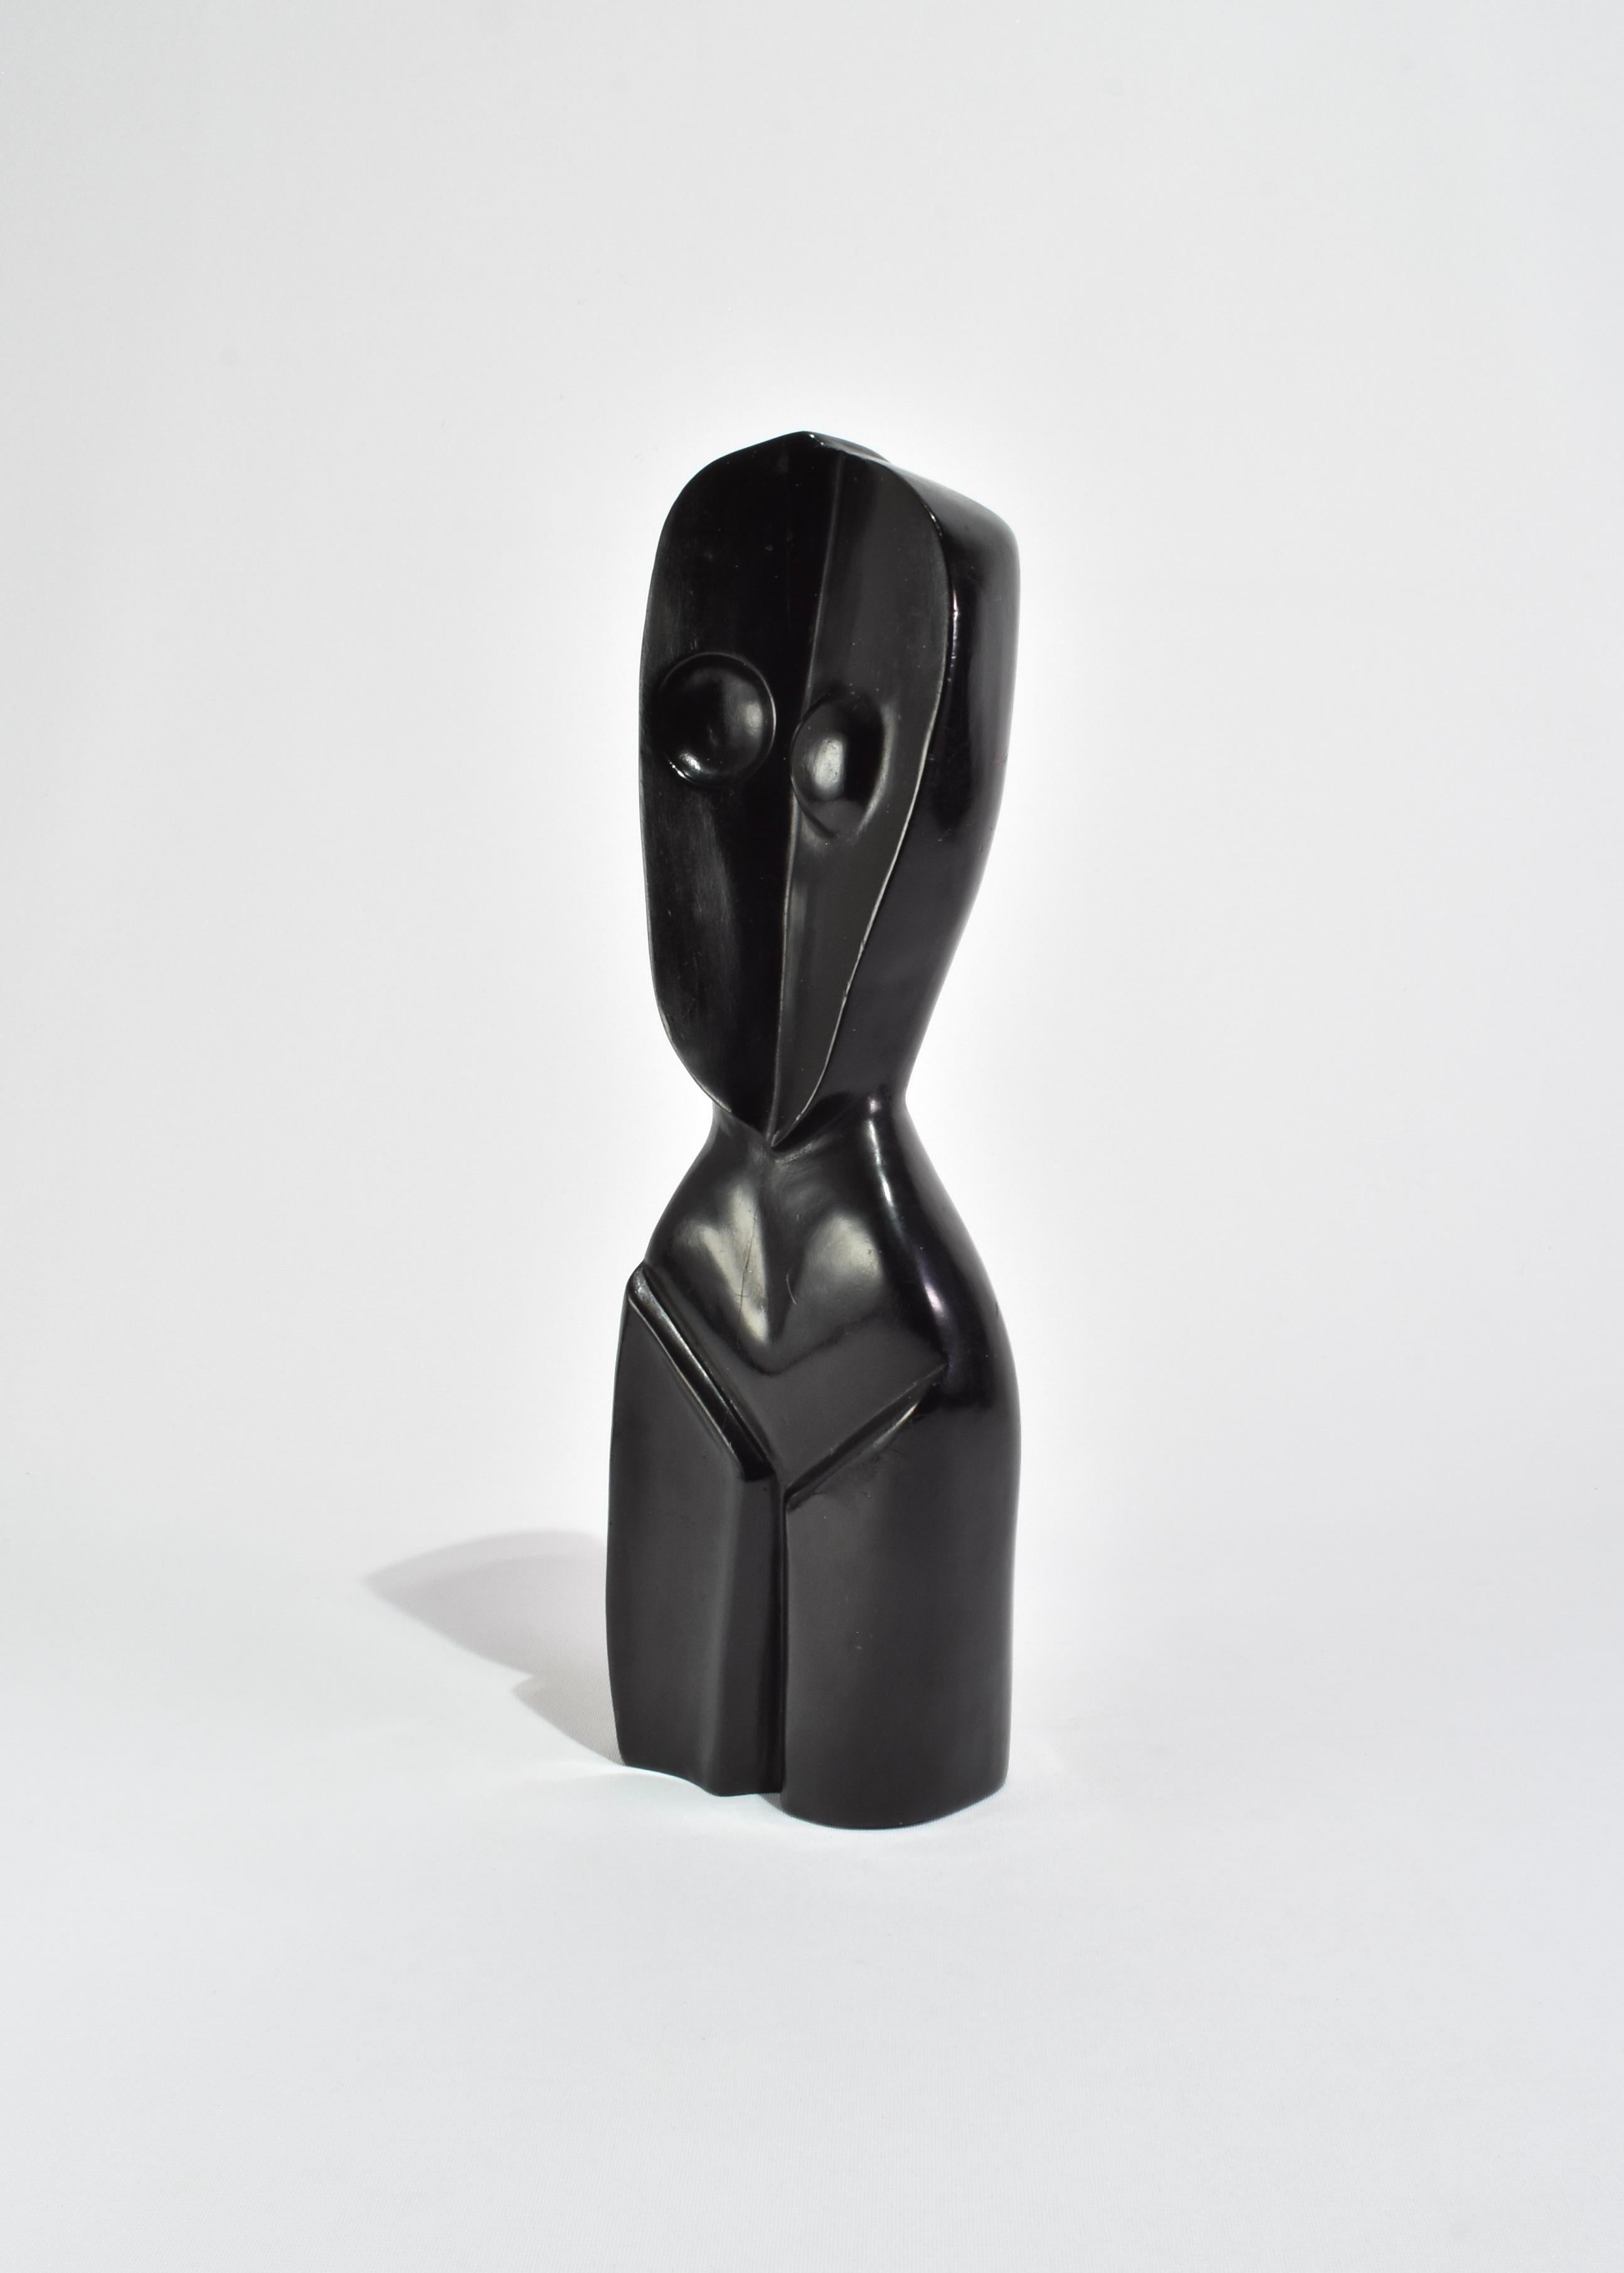 Mid-20th Century Cubist Torso Sculpture For Sale